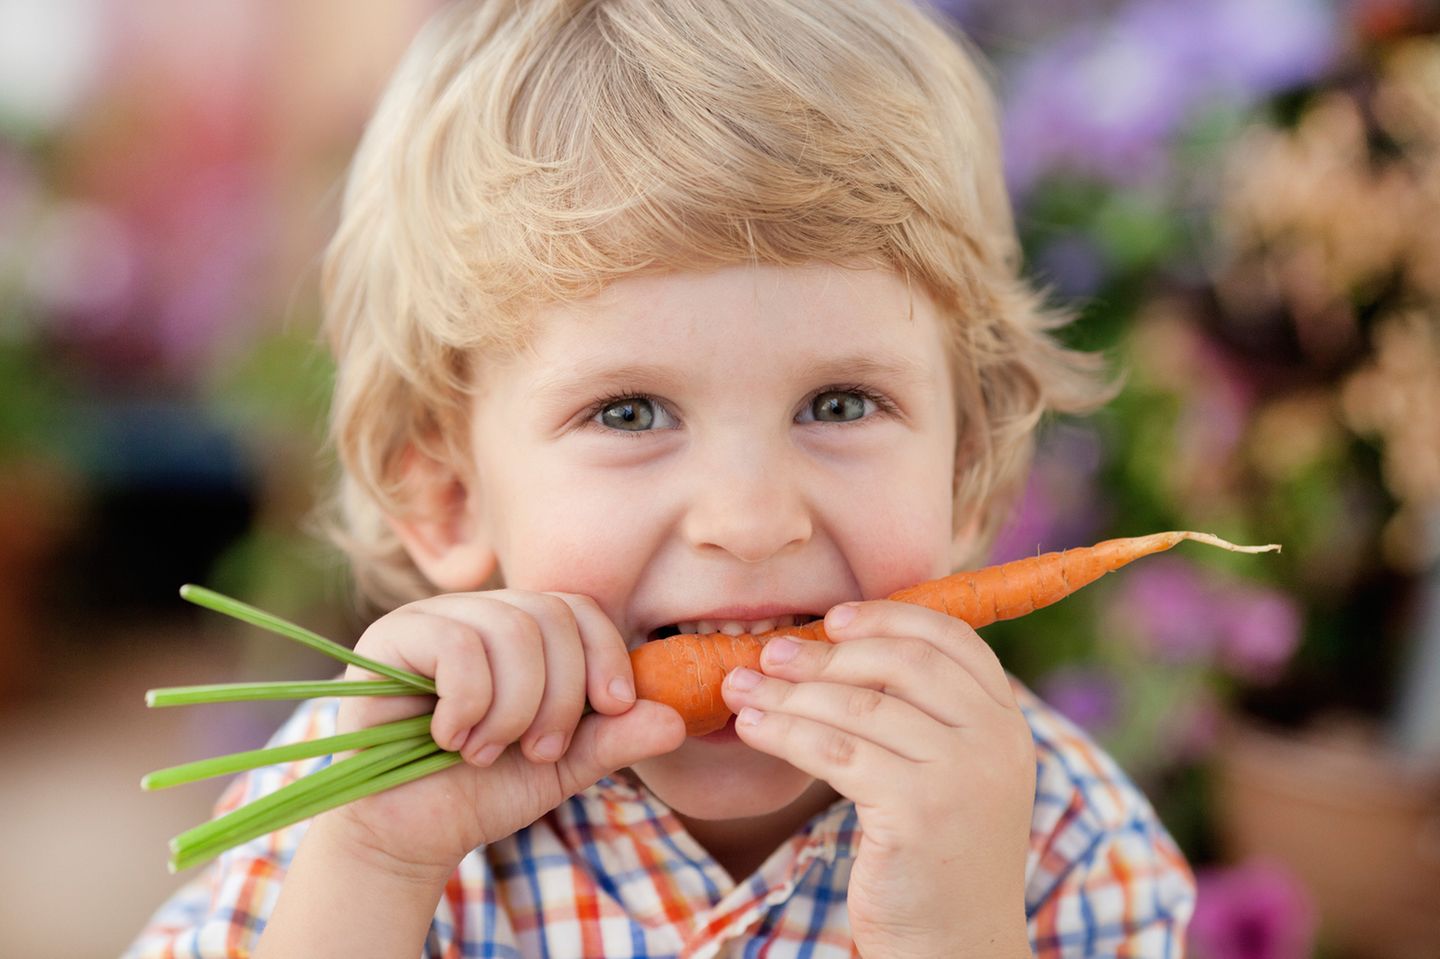 Kind mit Karotten in Mund, schaut in Kamera